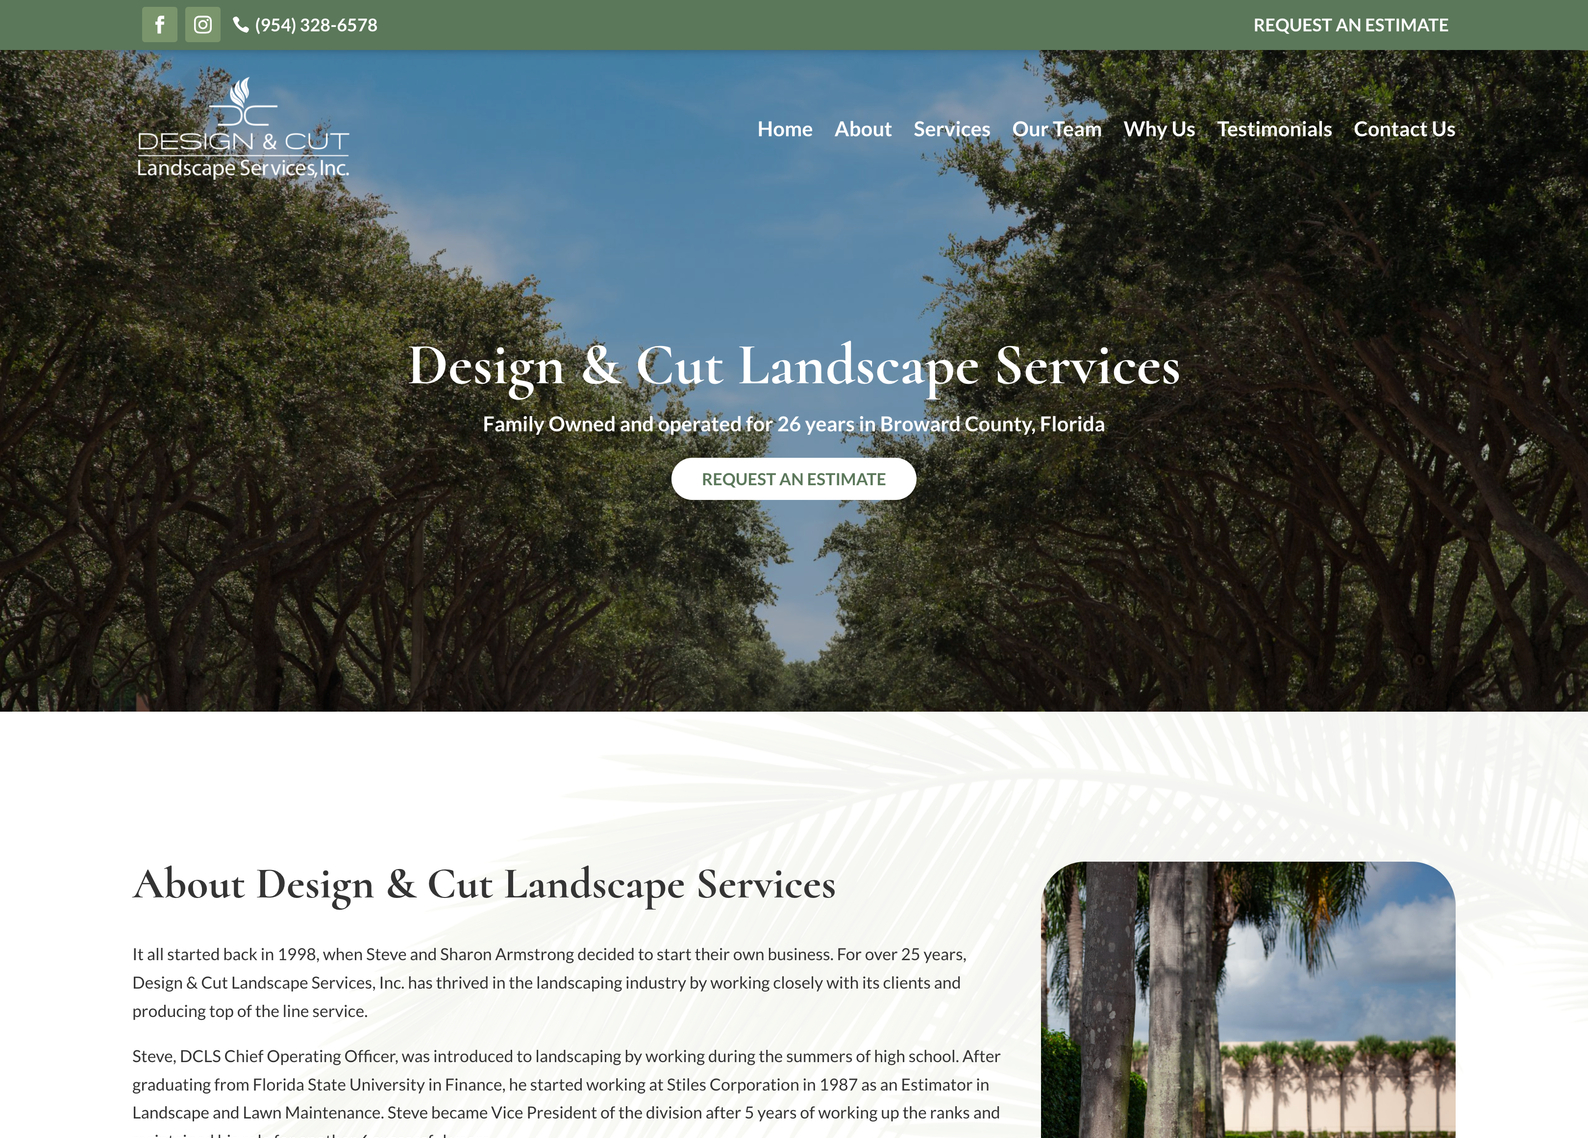 Design & Cut Landscape Services